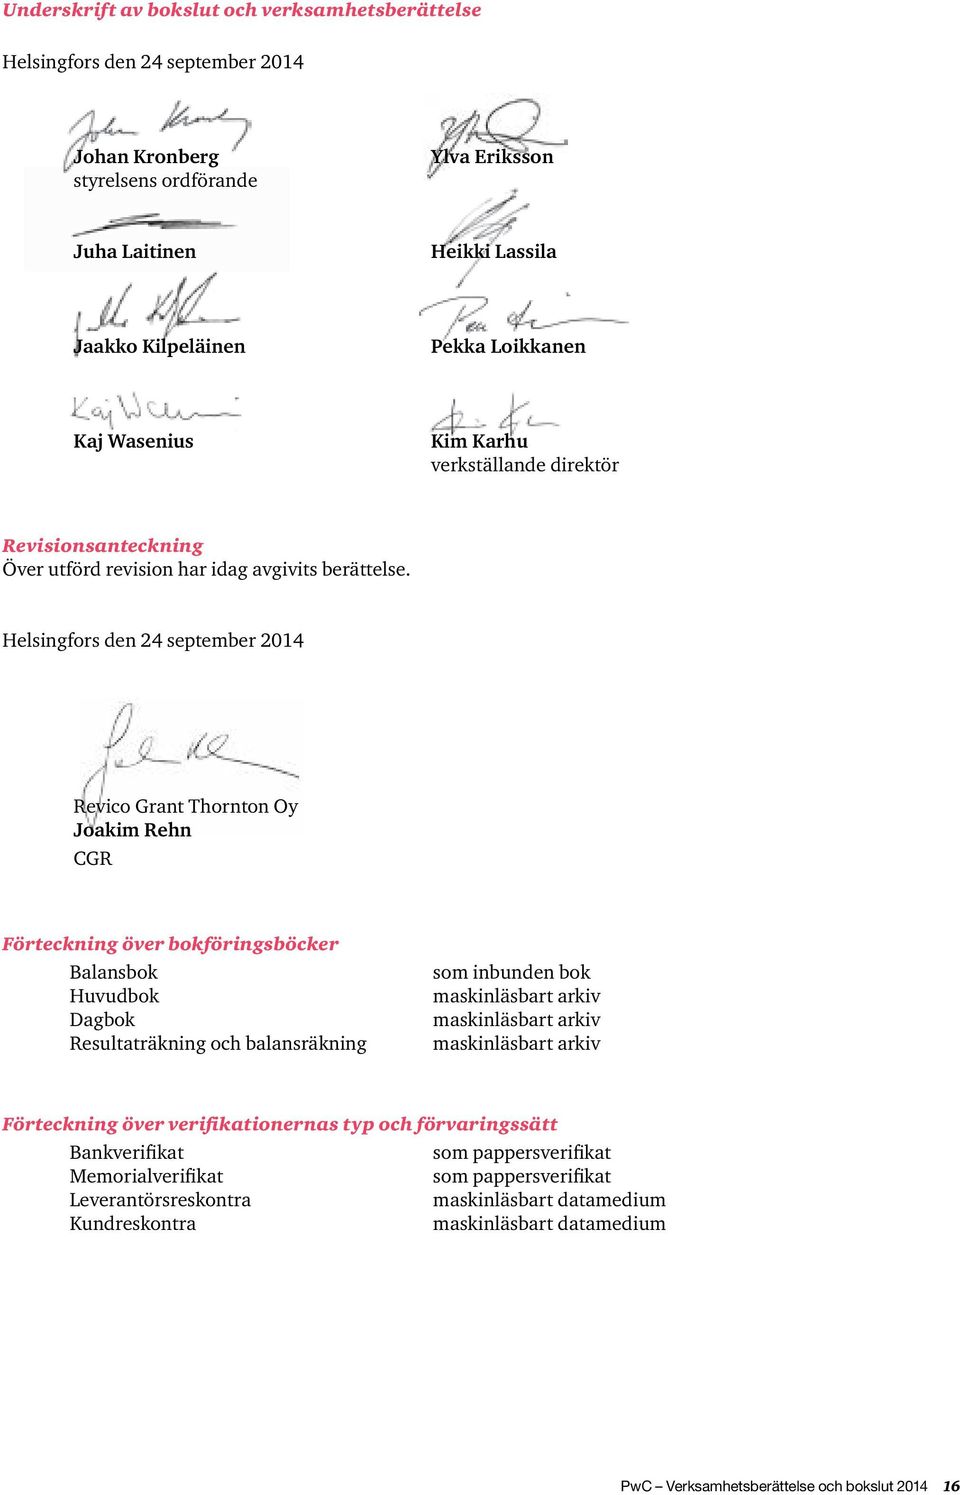 Helsingfors den 24 september 2014 Revico Grant Thornton Oy Joakim Rehn CGR Förteckning över bokföringsböcker Balansbok Huvudbok Dagbok Resultaträkning och balansräkning som inbunden bok maskinläsbart